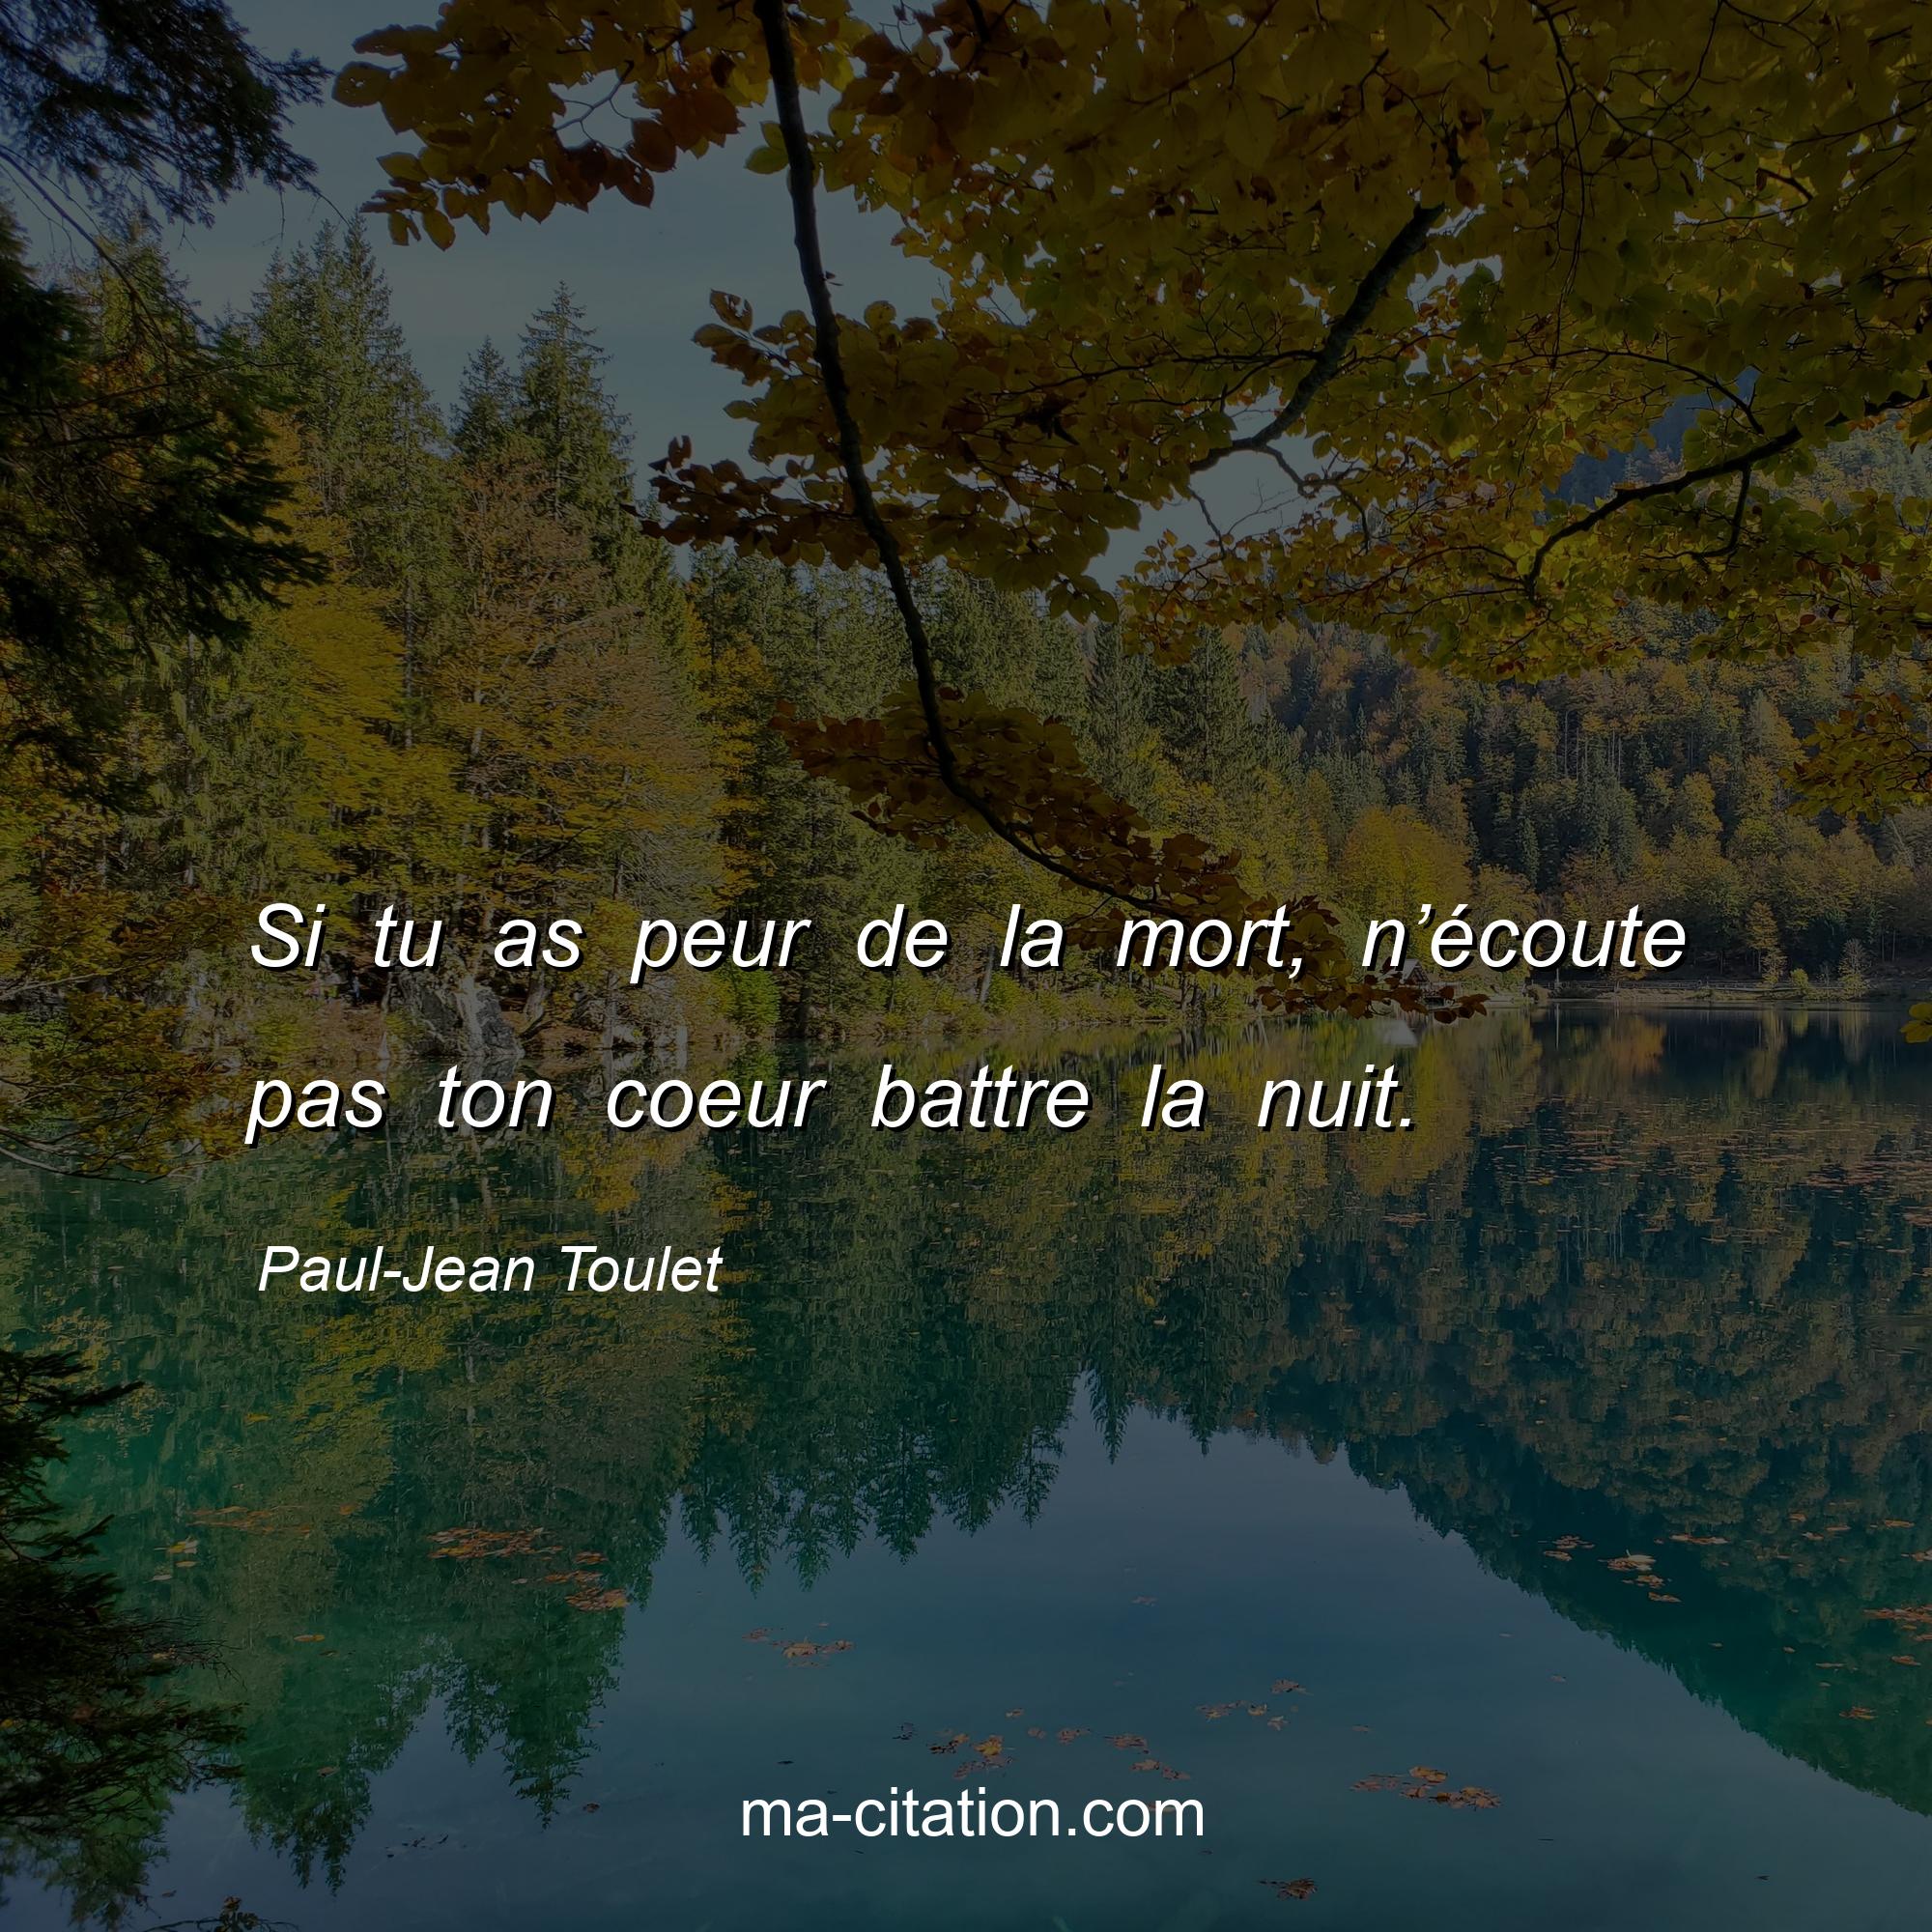 Paul-Jean Toulet : Si tu as peur de la mort, n’écoute pas ton coeur battre la nuit.